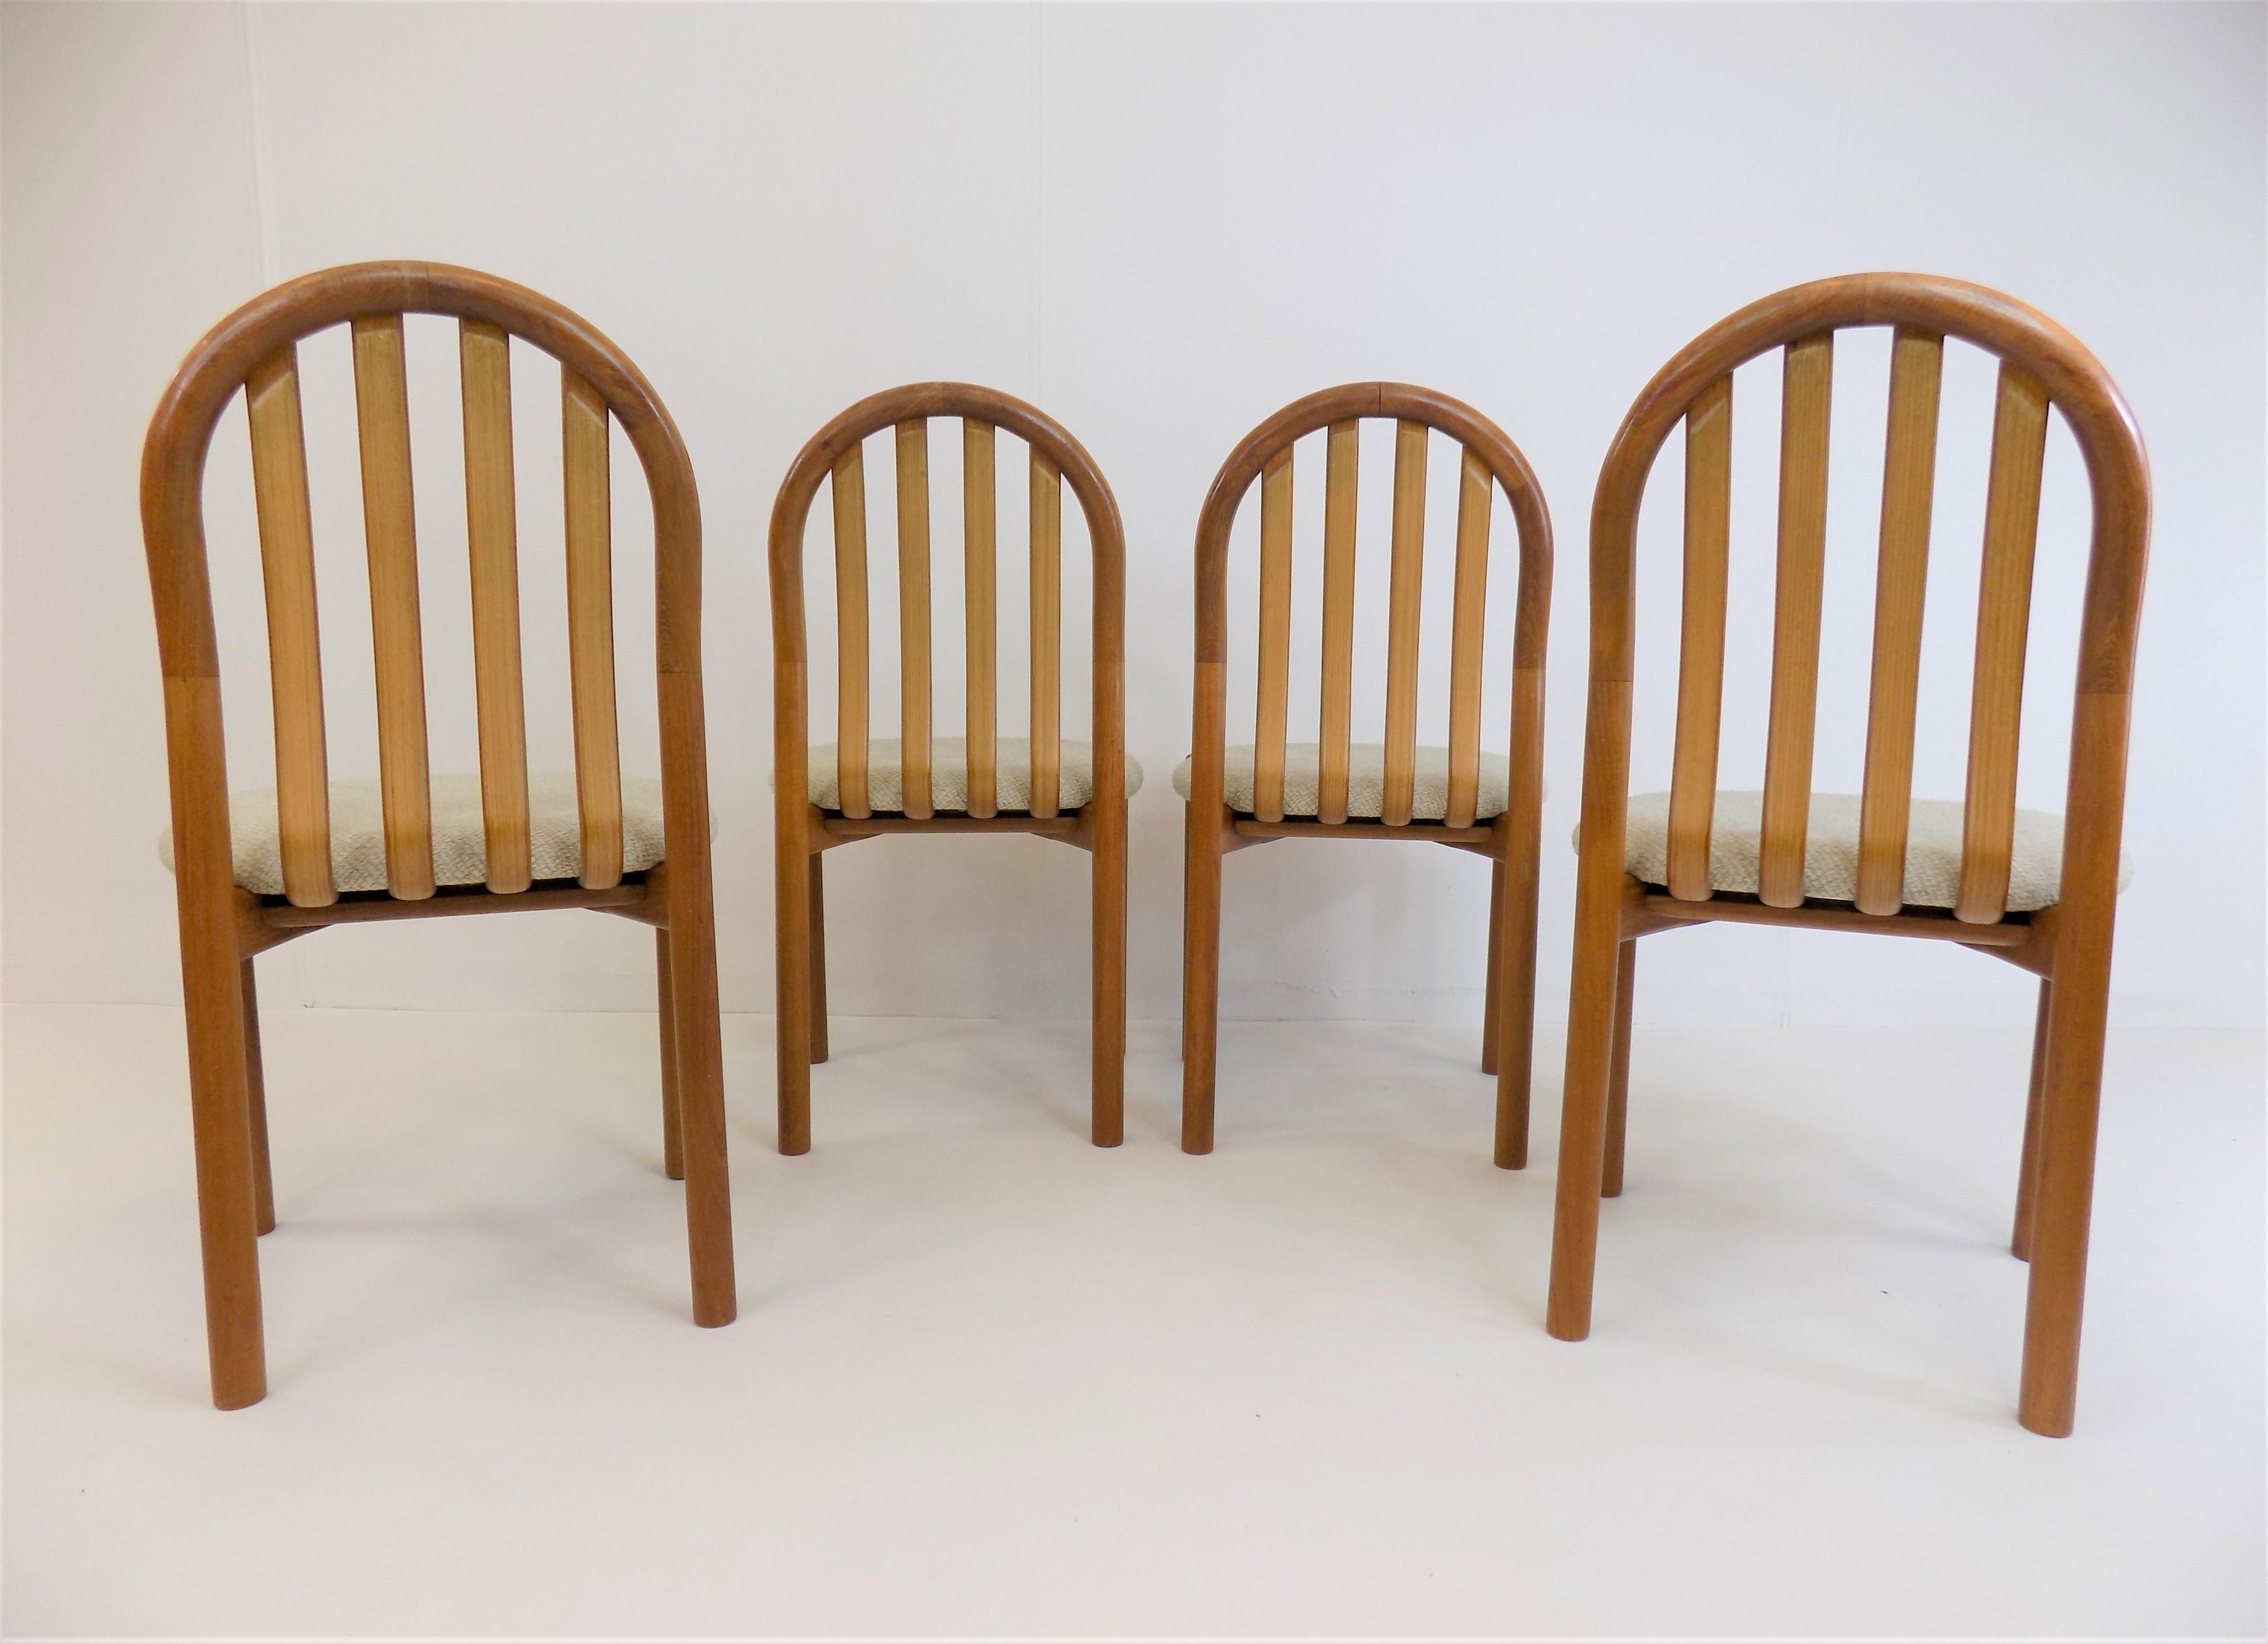 Les 4 chaises de salle à manger Condit sont fabriquées à partir d'un teck merveilleusement solide et sont dans un état proche de l'état neuf. Les cadres en teck ne présentent pratiquement aucun signe d'usure et ont une couleur chaude très attrayante